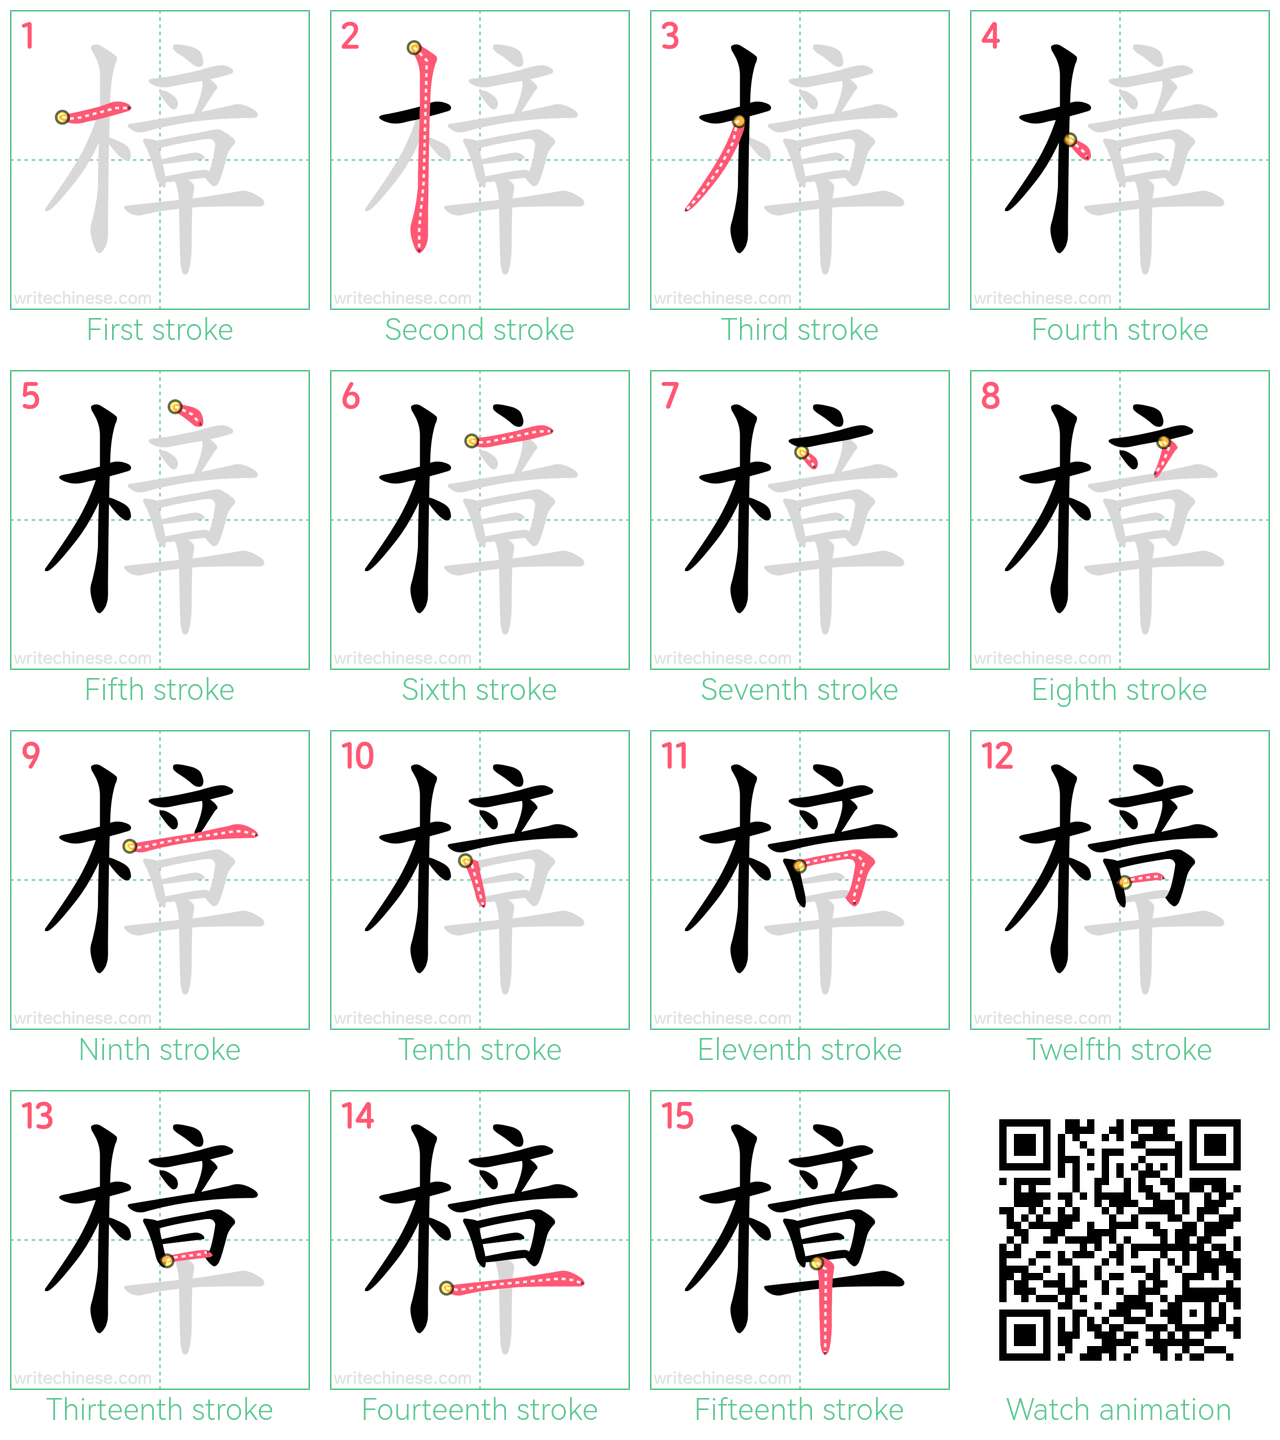 樟 step-by-step stroke order diagrams